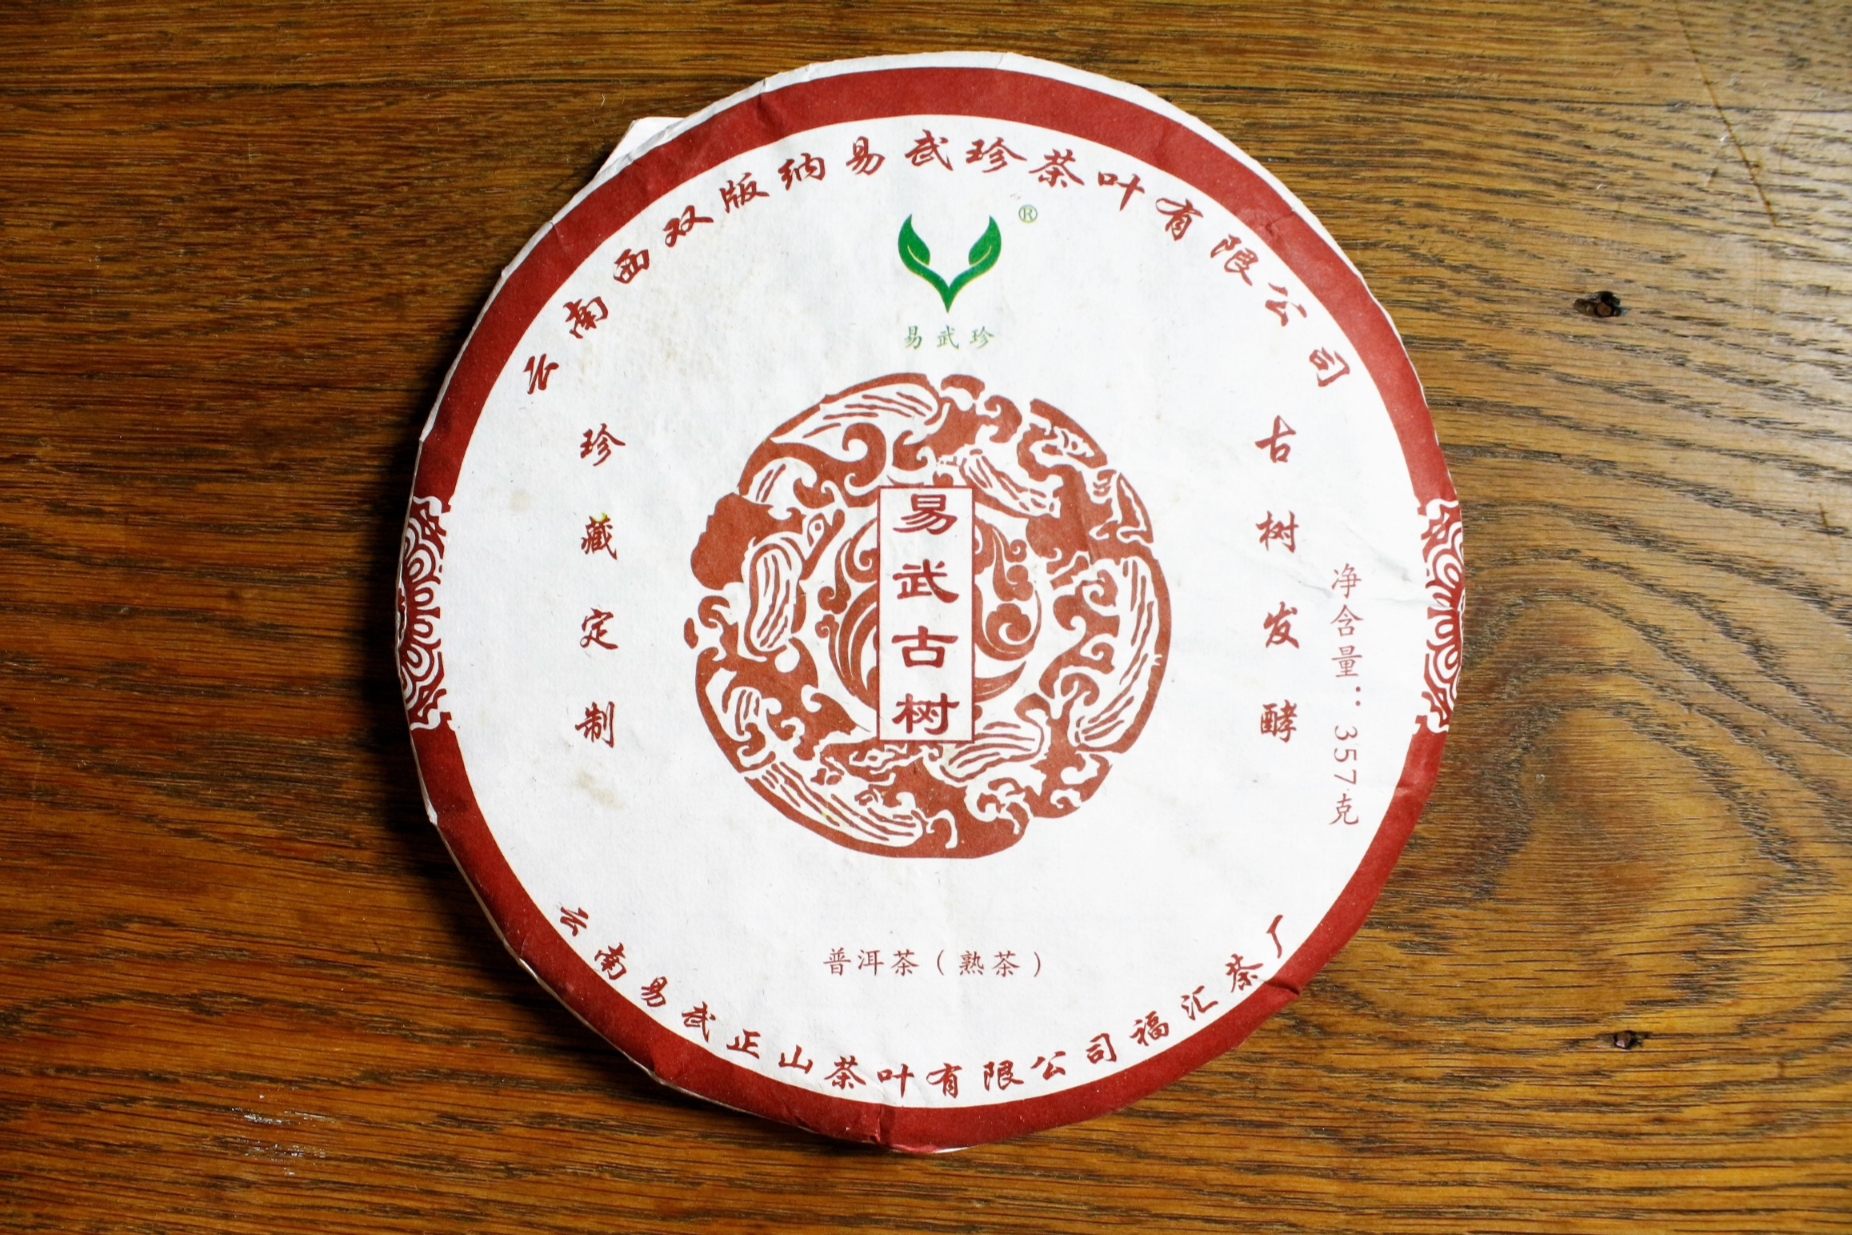 2016 Yiwu Mountain Tea 'Yiwu Gushu Ripe' Puerh Tea Cake